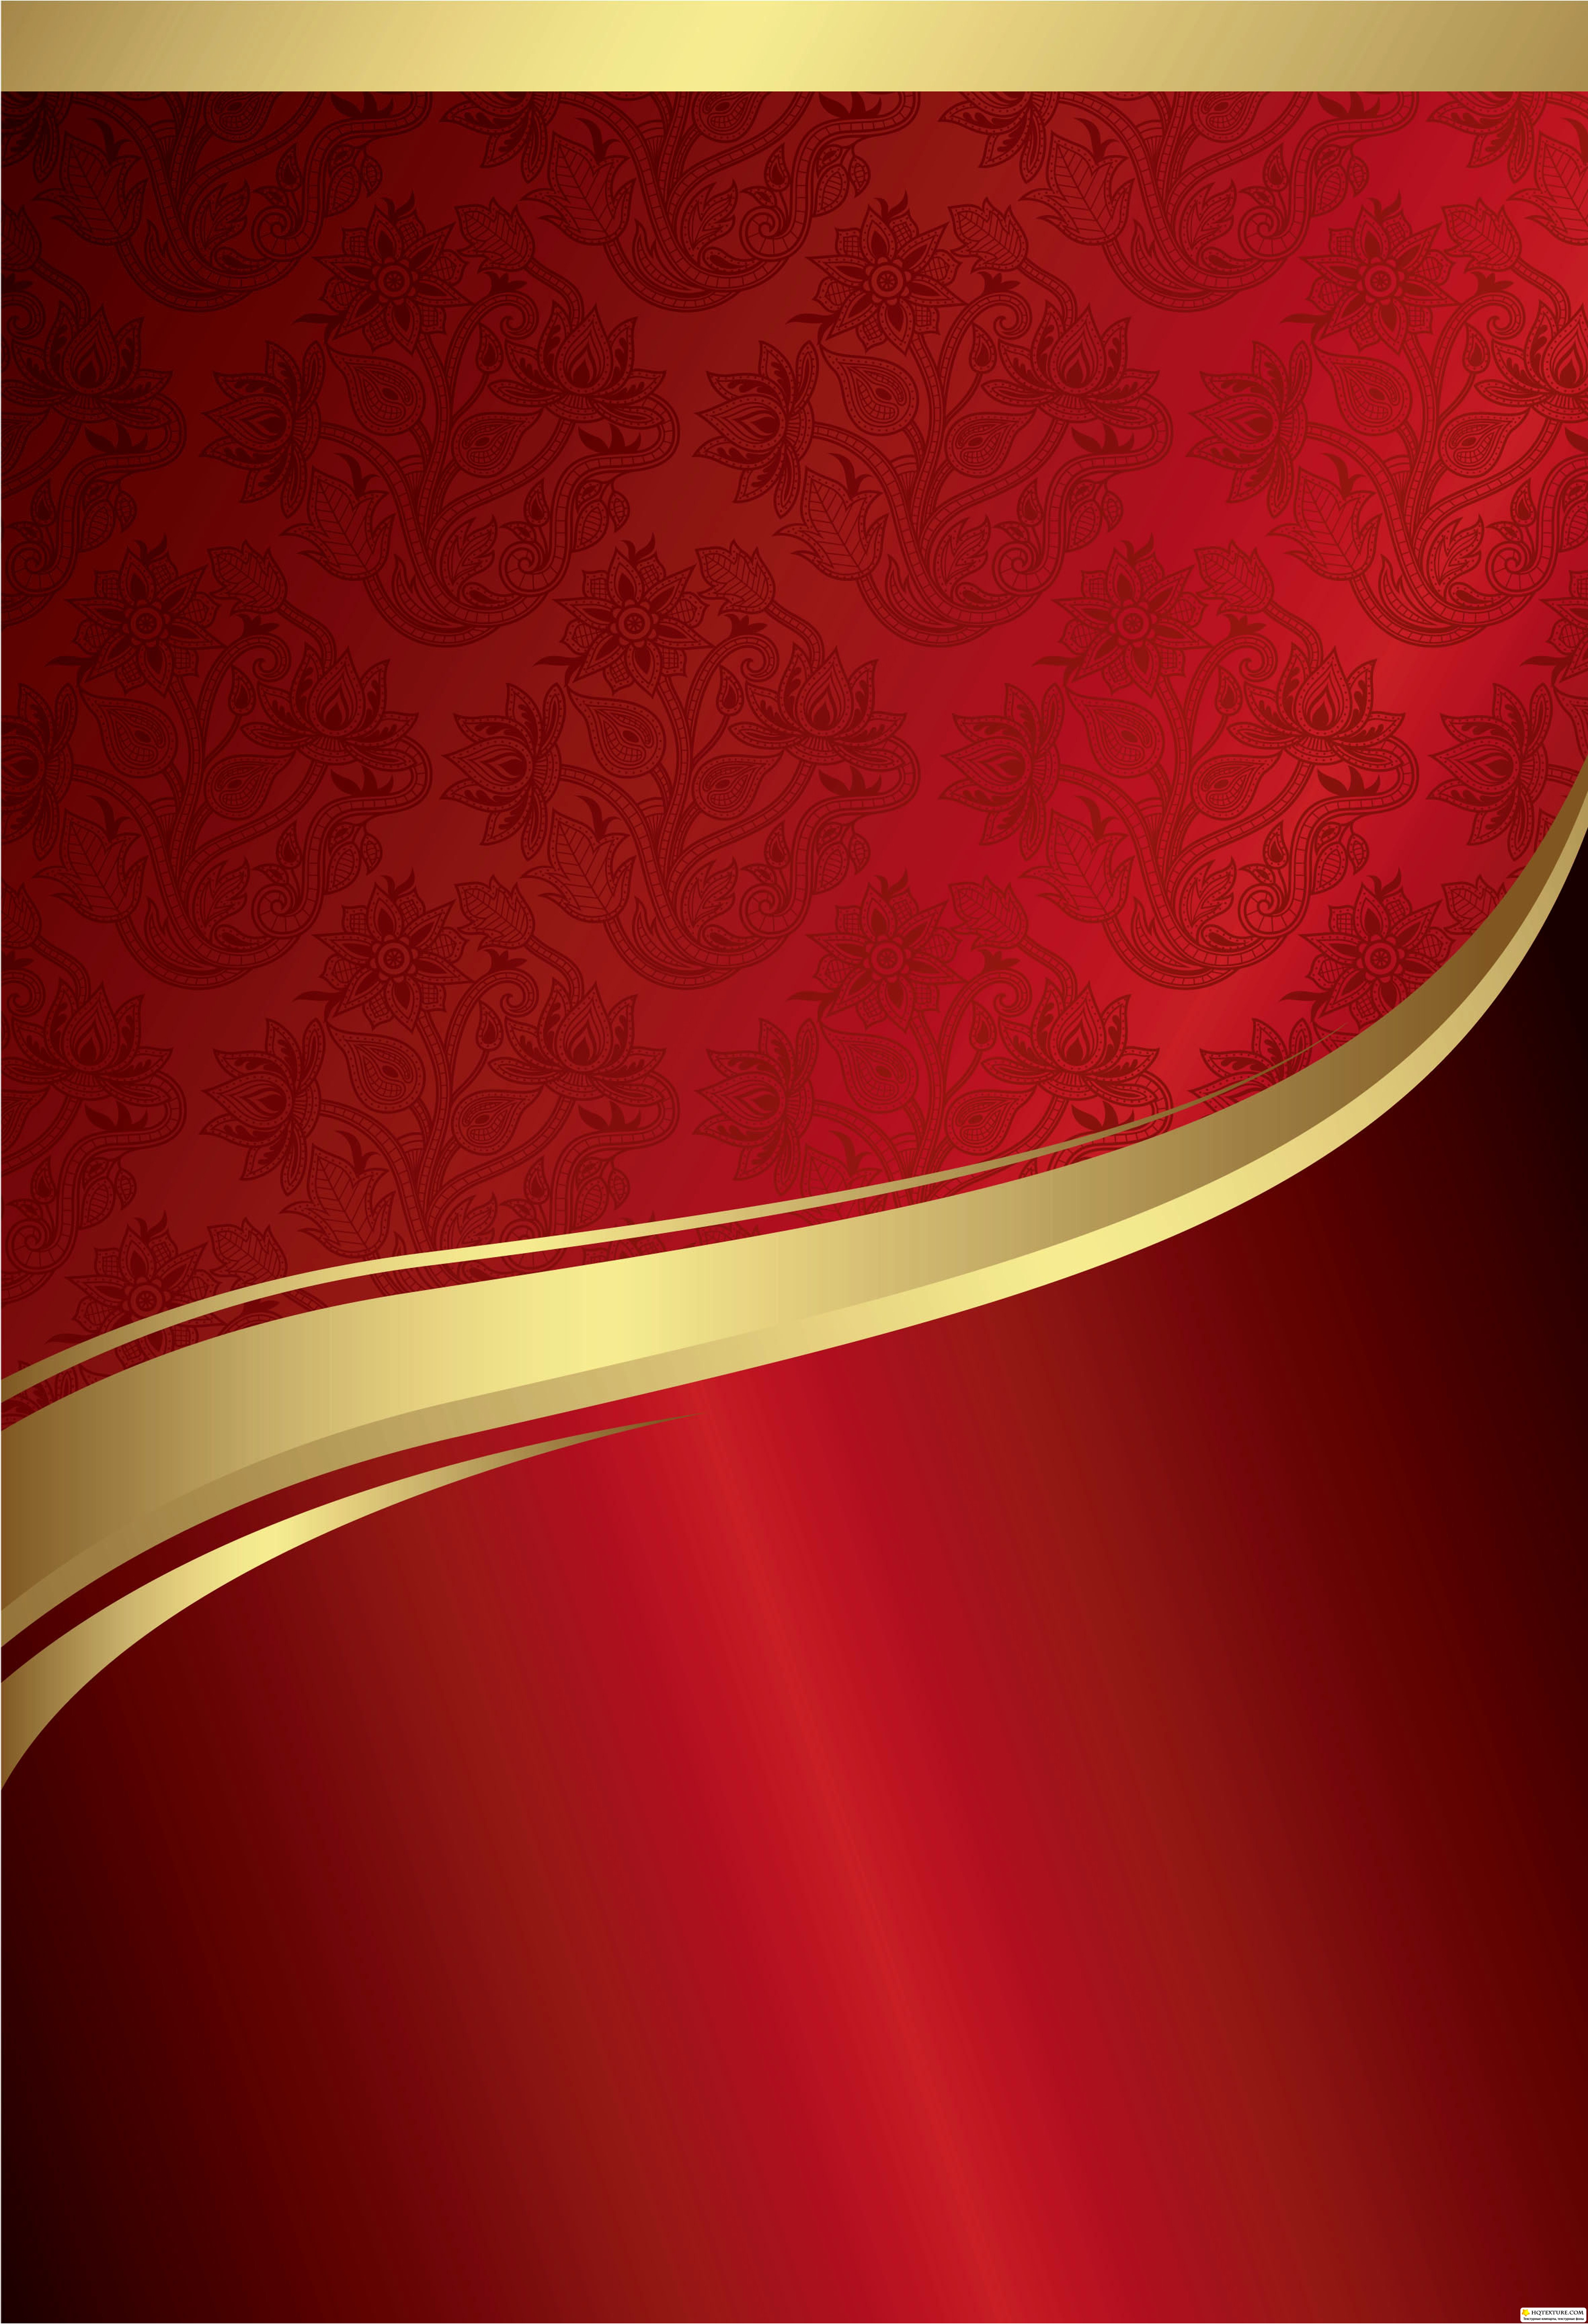 Hình nền hoa vàng đỏ hoàng gia chắc chắn sẽ gợi lên trong bạn cảm giác đầy hoài niệm về vẻ đẹp cổ điển và tinh tế. Khám phá ngay hình ảnh liên quan để cảm nhận được sự hoàn hảo trong từng nét vẽ.